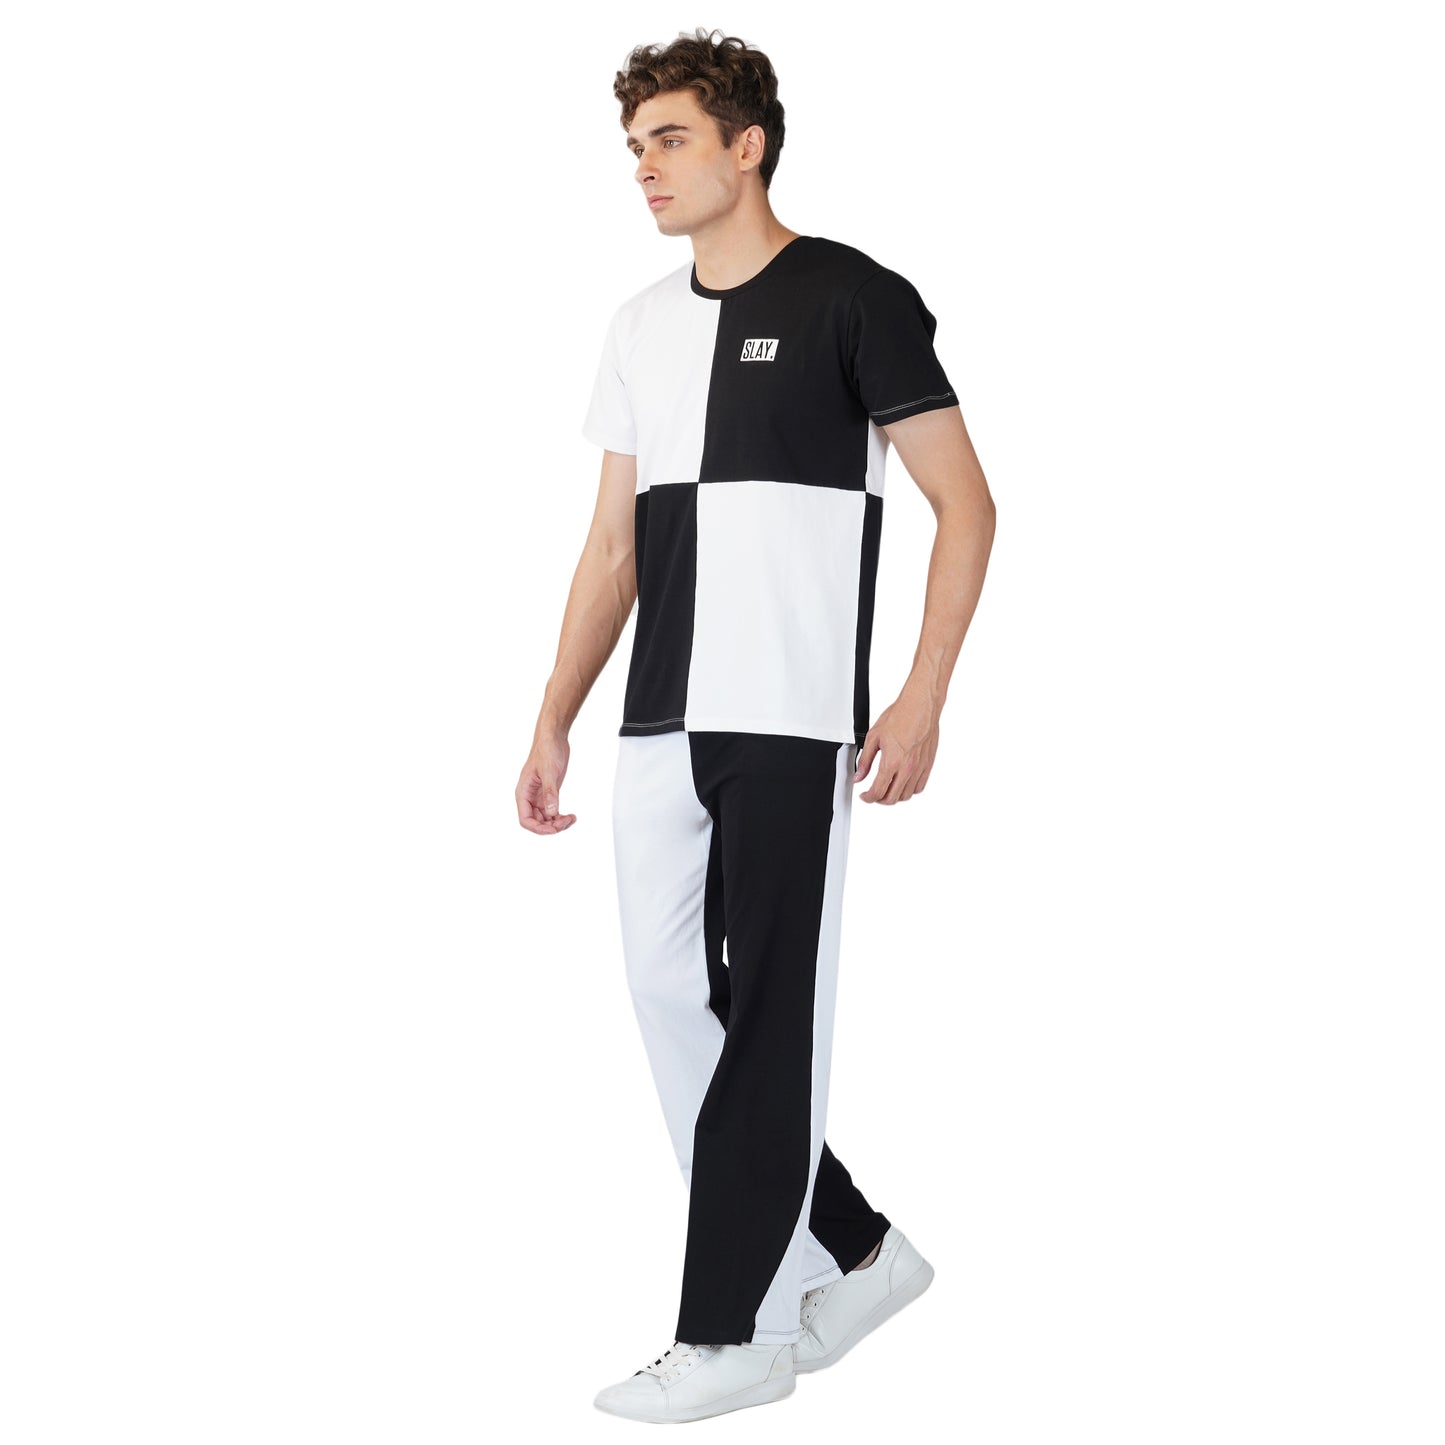 SLAY. Men's Black & White T-shirt & Pants Co-ord Set